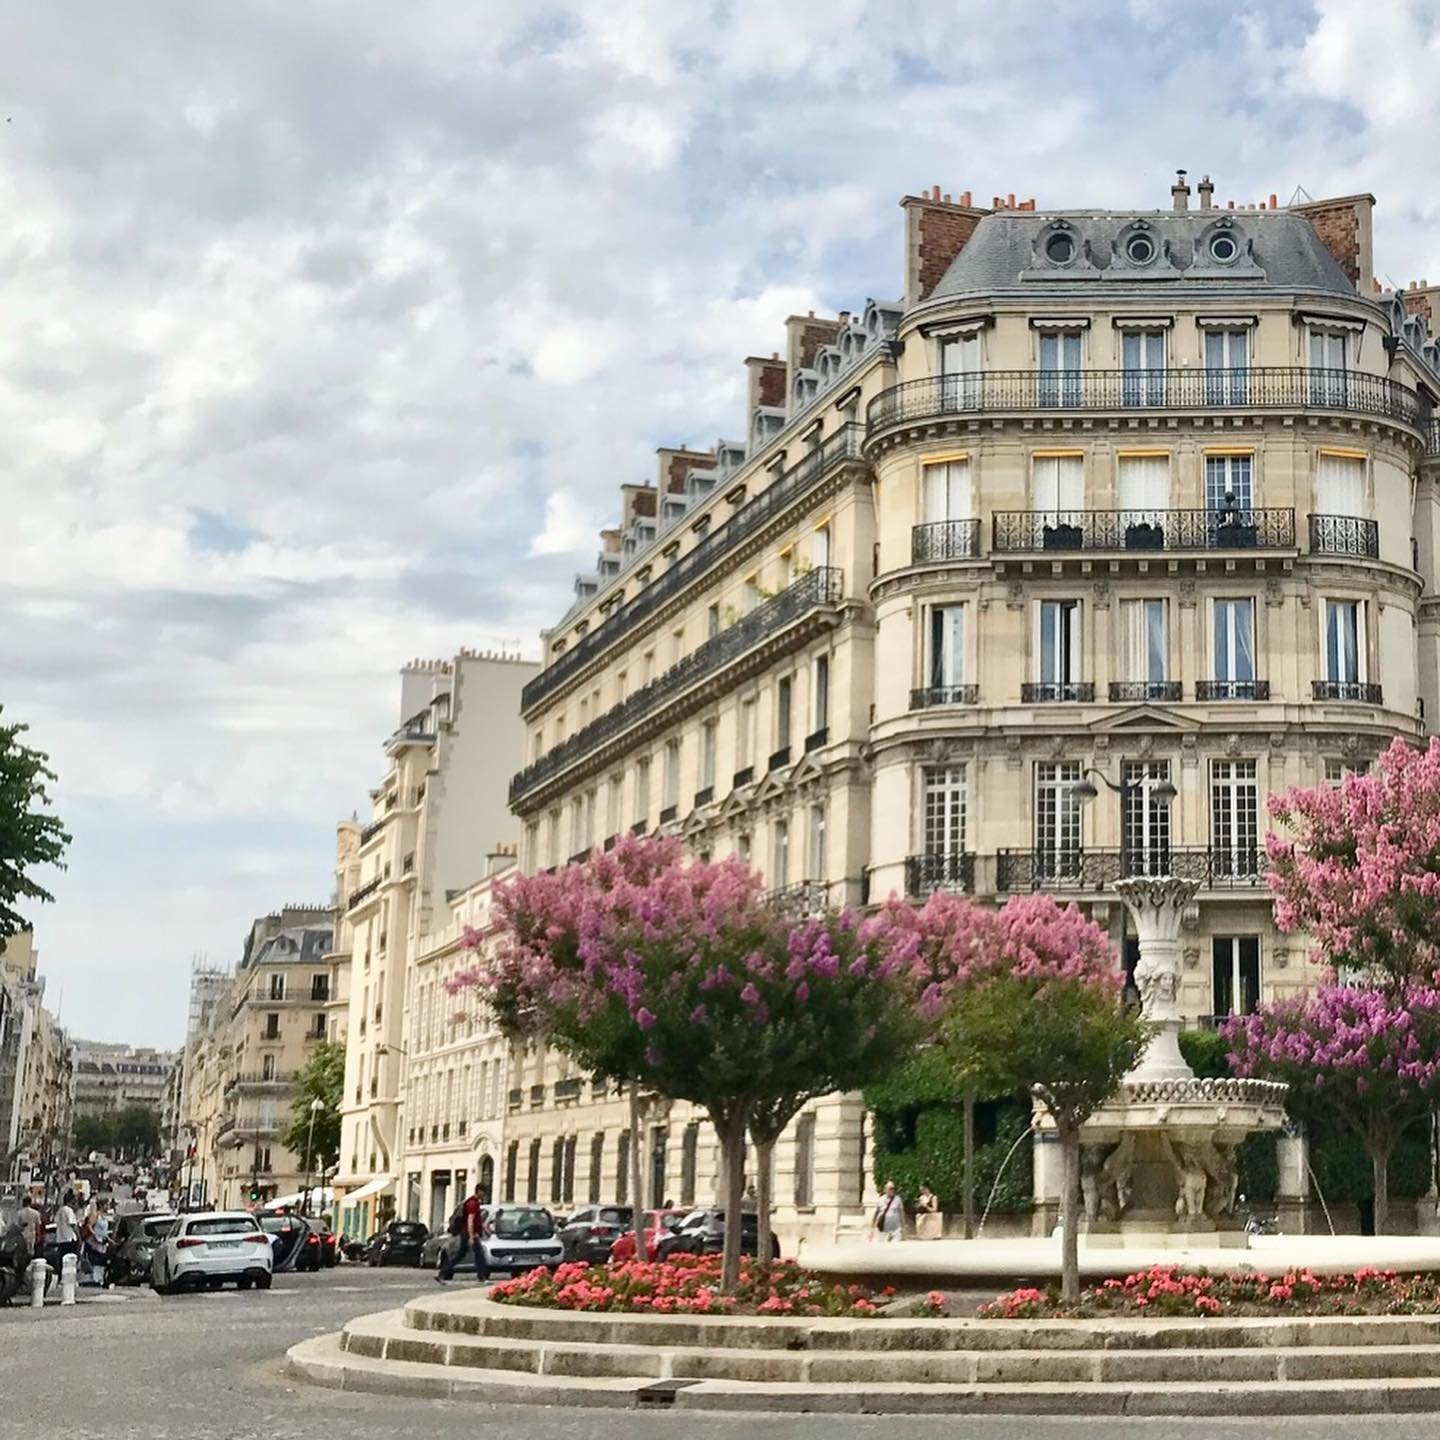 Francis-First-Street-Paris-Fountain.jpg.jpg